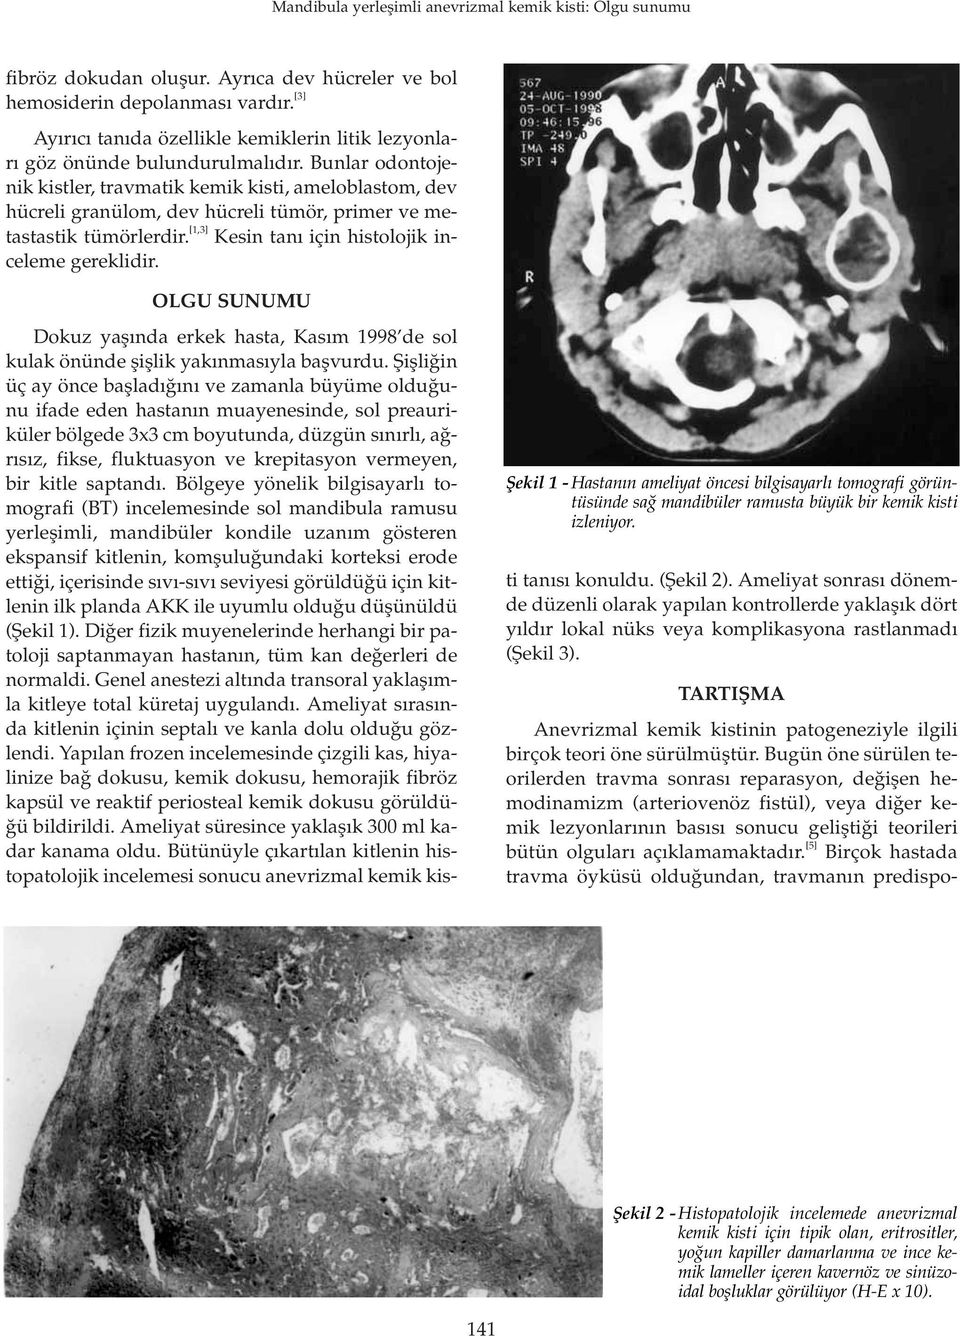 OLGU SUNUMU fiekil 1 - Hastan n ameliyat öncesi bilgisayarl tomografi görüntüsünde sa mandibüler ramusta büyük bir kemik kisti izleniyor.